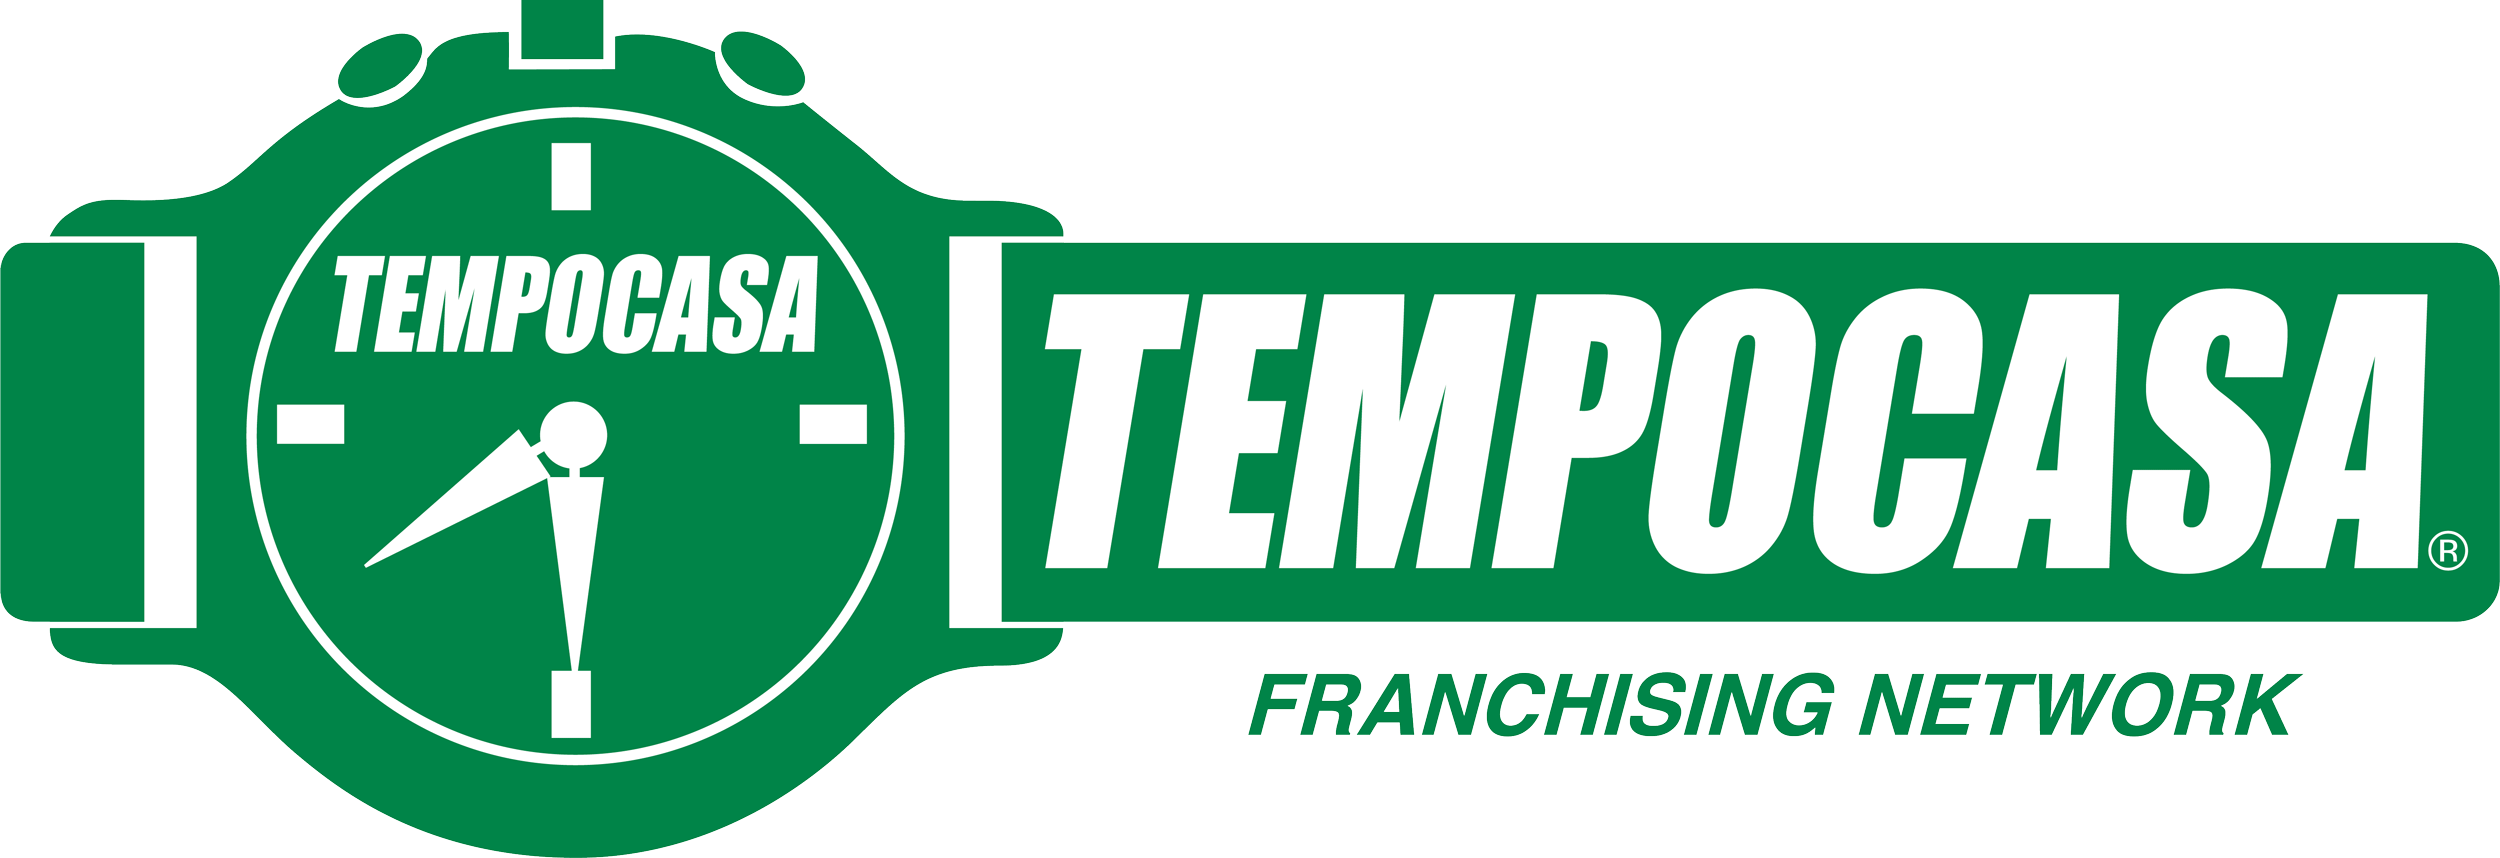 Settimo Torinese - Centro - Tempocasa